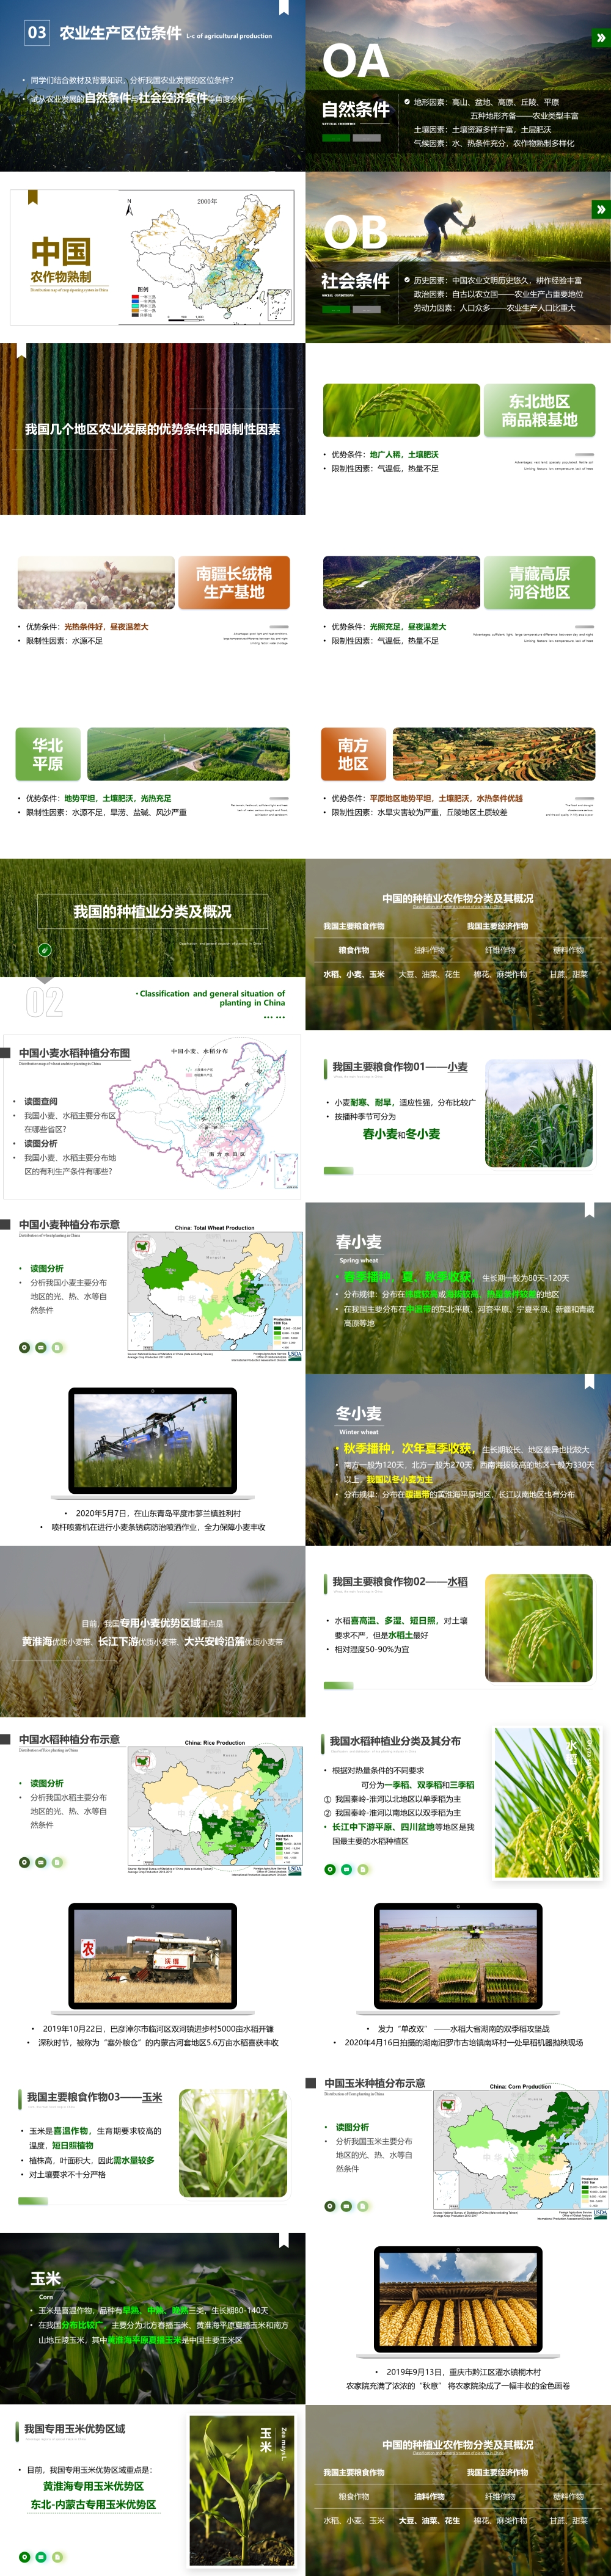 第07讲 中国的农业 [2021版]-1000px-01.jpg